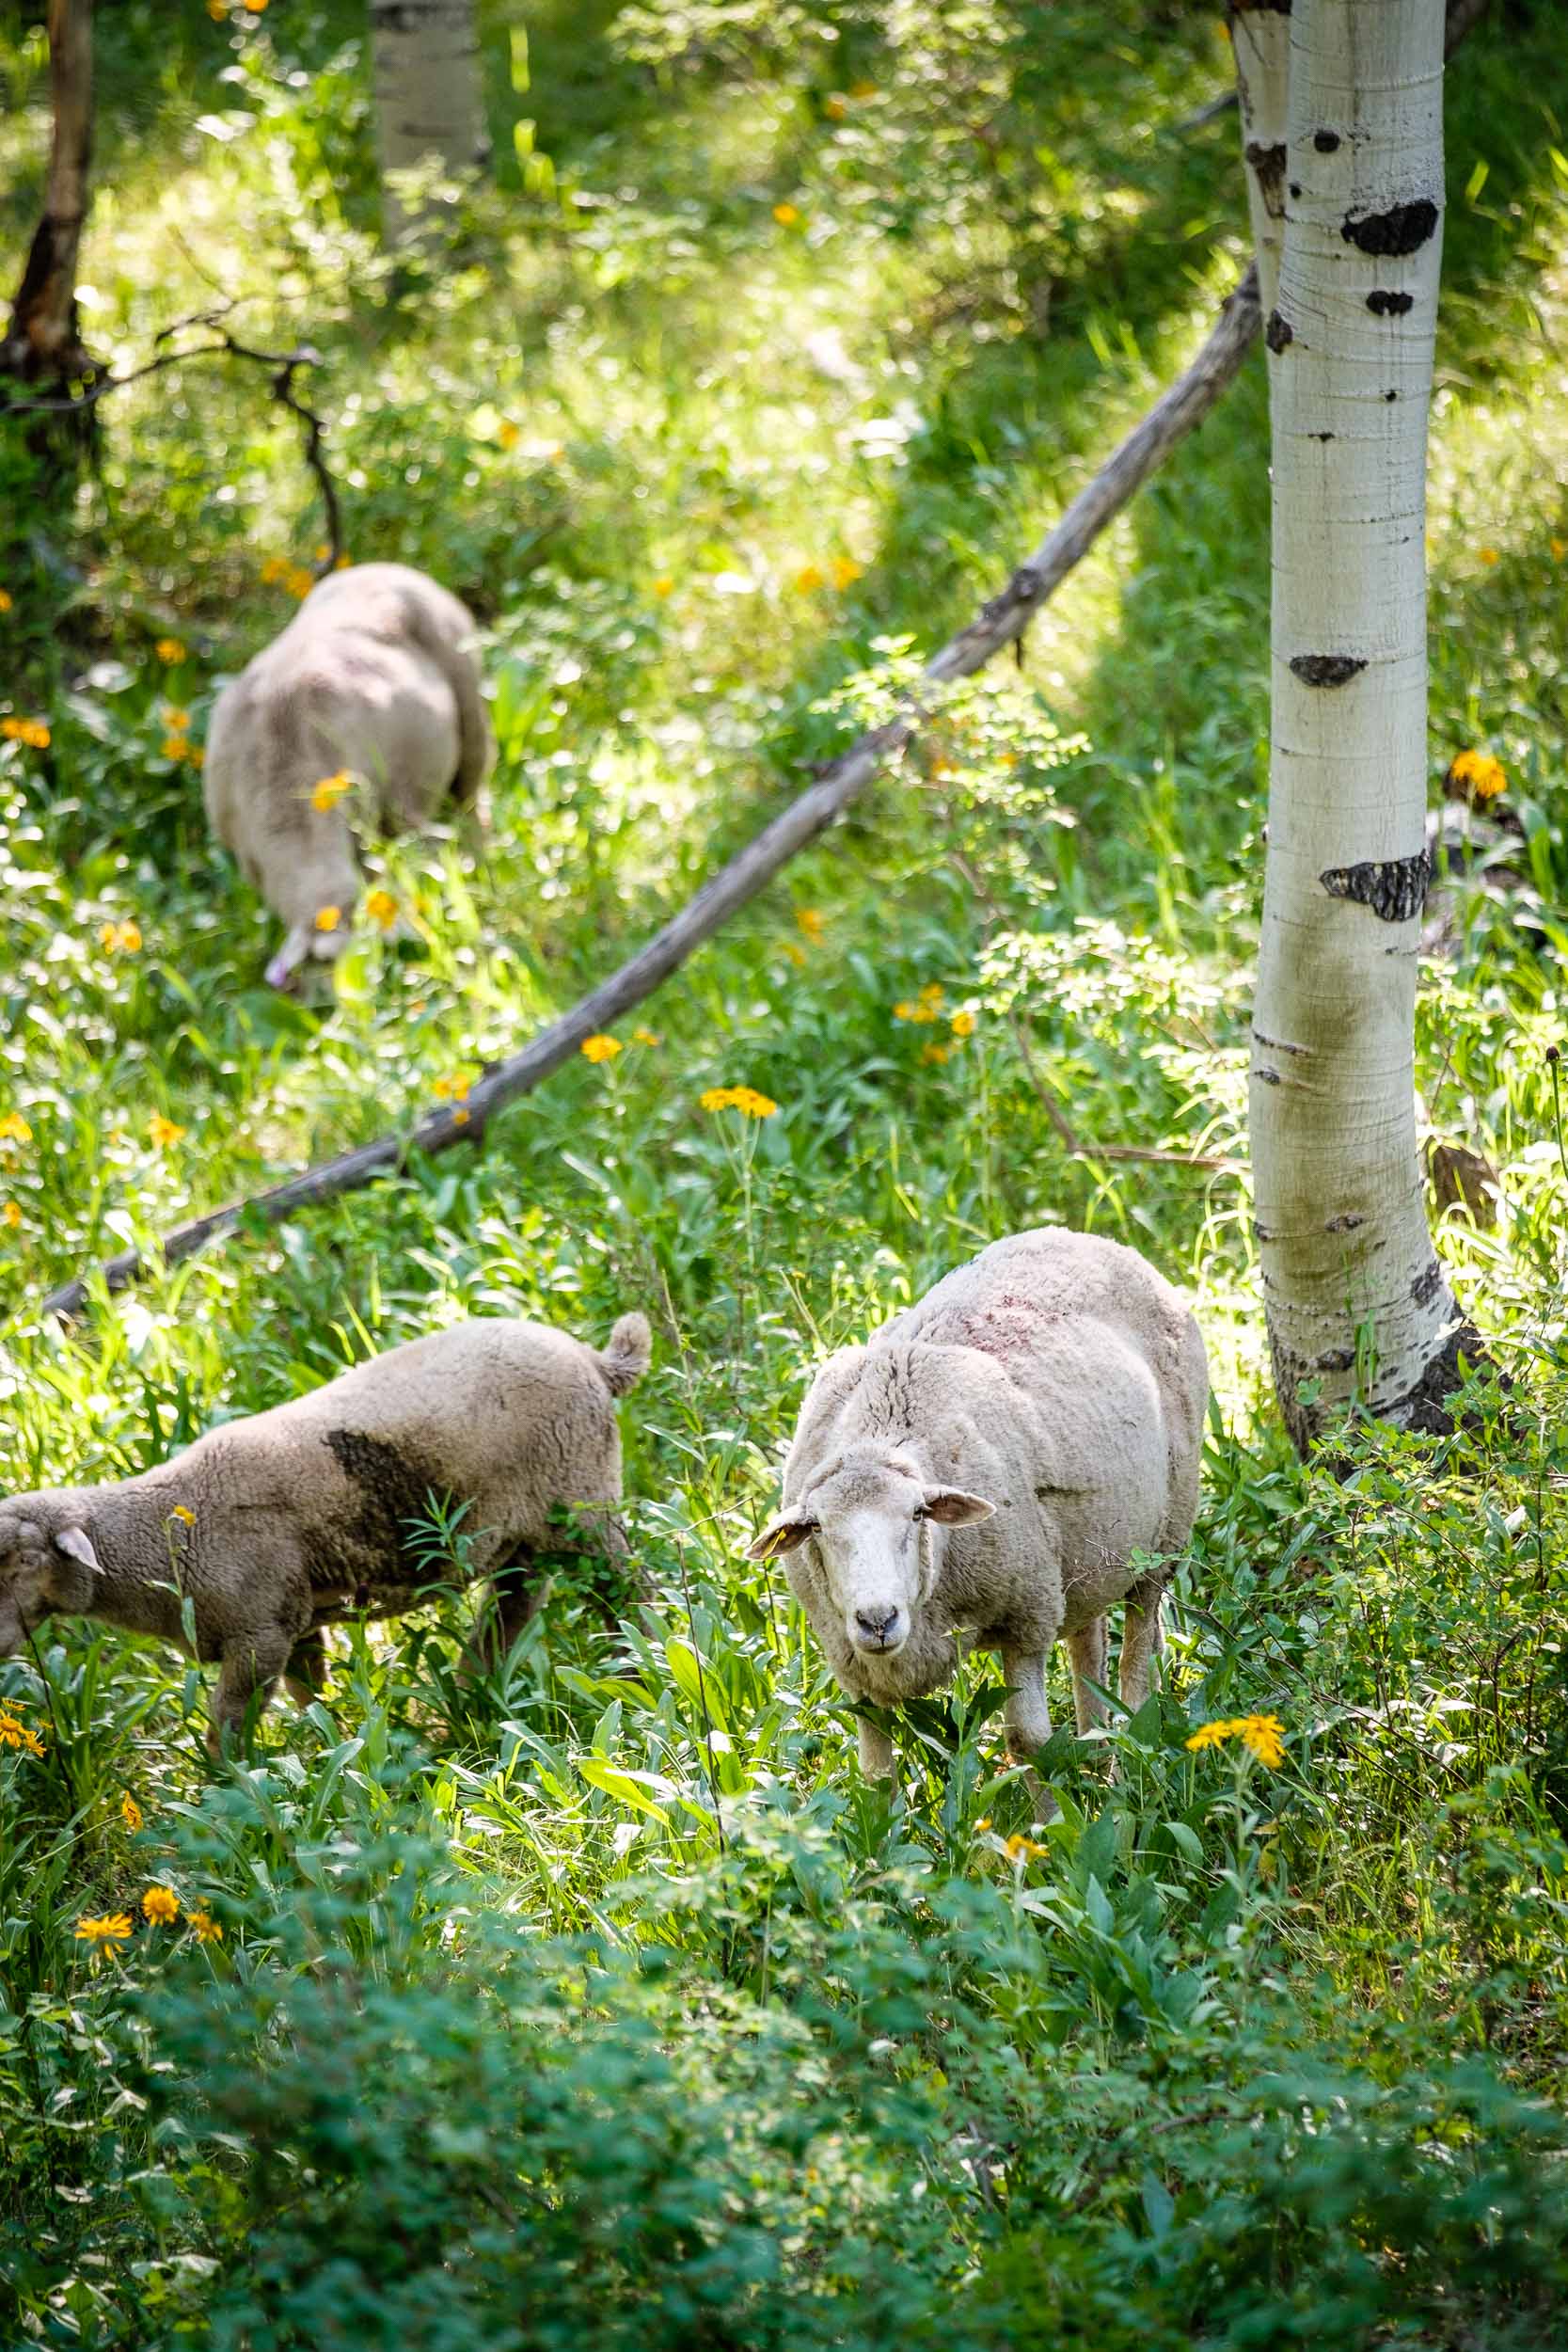  Sheep grazing along Kebler Pass, Fuji XT2, 50-140mm f/2.8 @ 61mm 